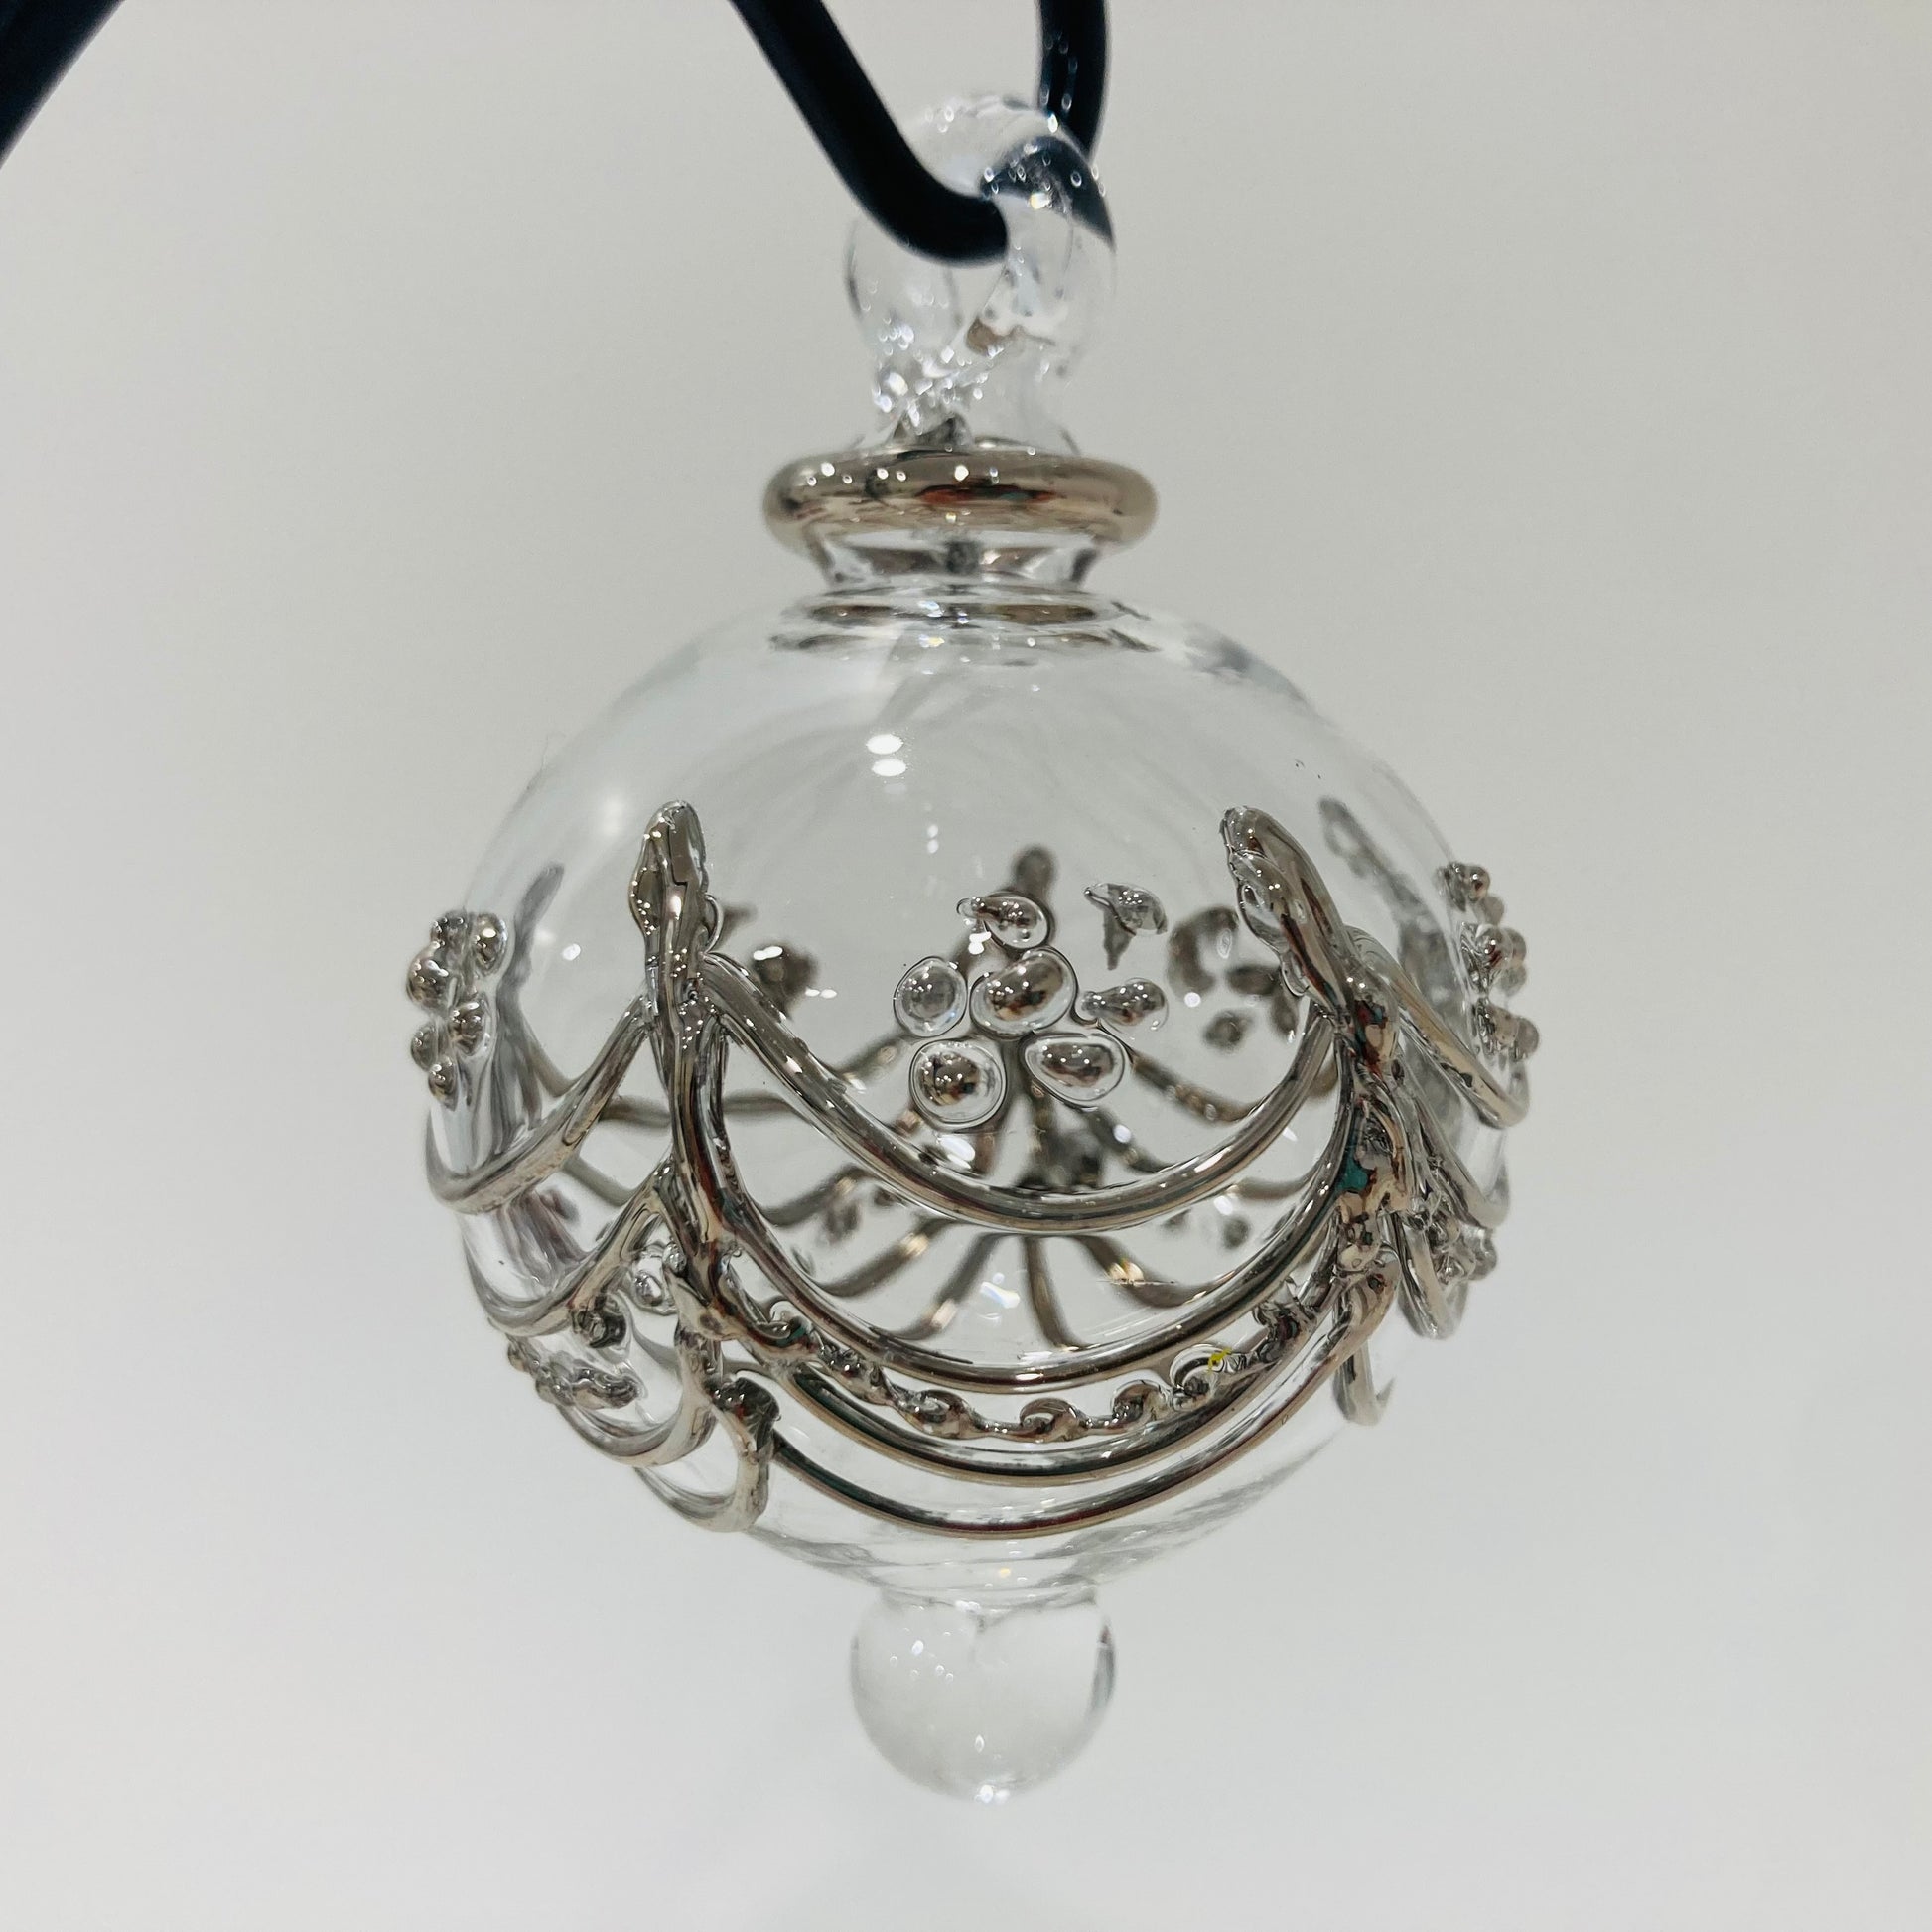 Blown Glass Small Ornament - Delicate Drapes